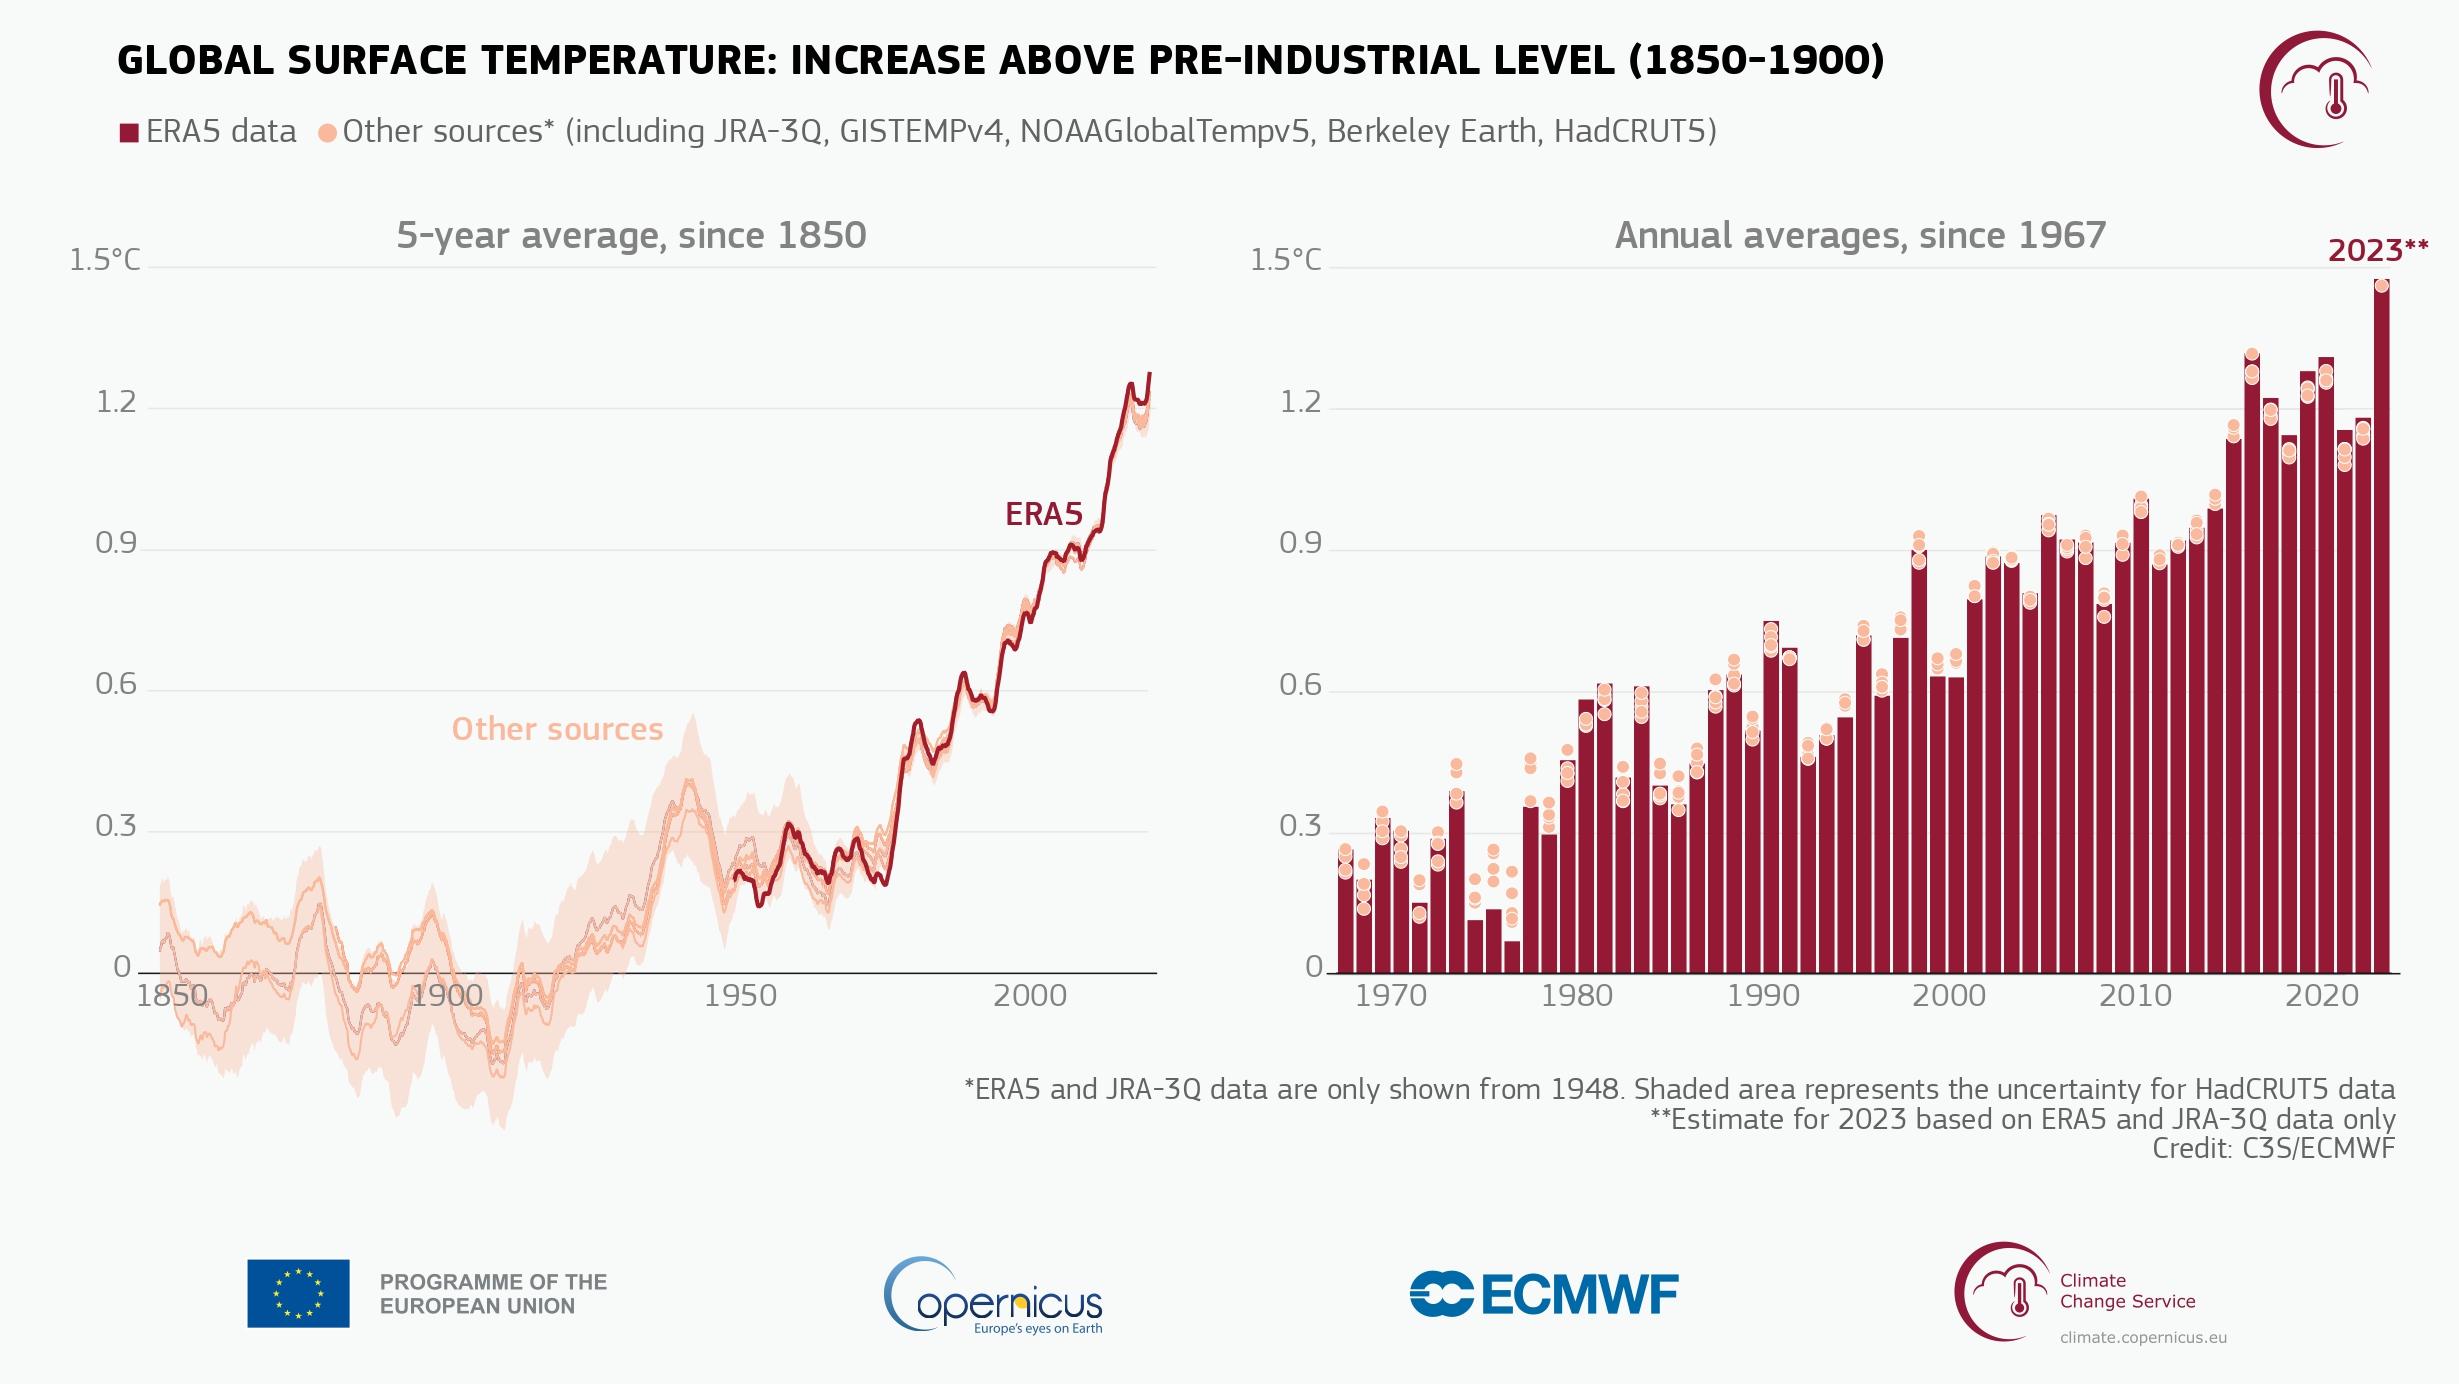 Augmentation de la température de l'air à la surface du globe par rapport à la moyenne de l'ère pré-industrielle (1850-1900), représentée sous forme de moyennes quinquennales depuis 1850 (à gauche) et de moyennes annuelles depuis 1967 (à droite). [Observatoire européen Copernicus]